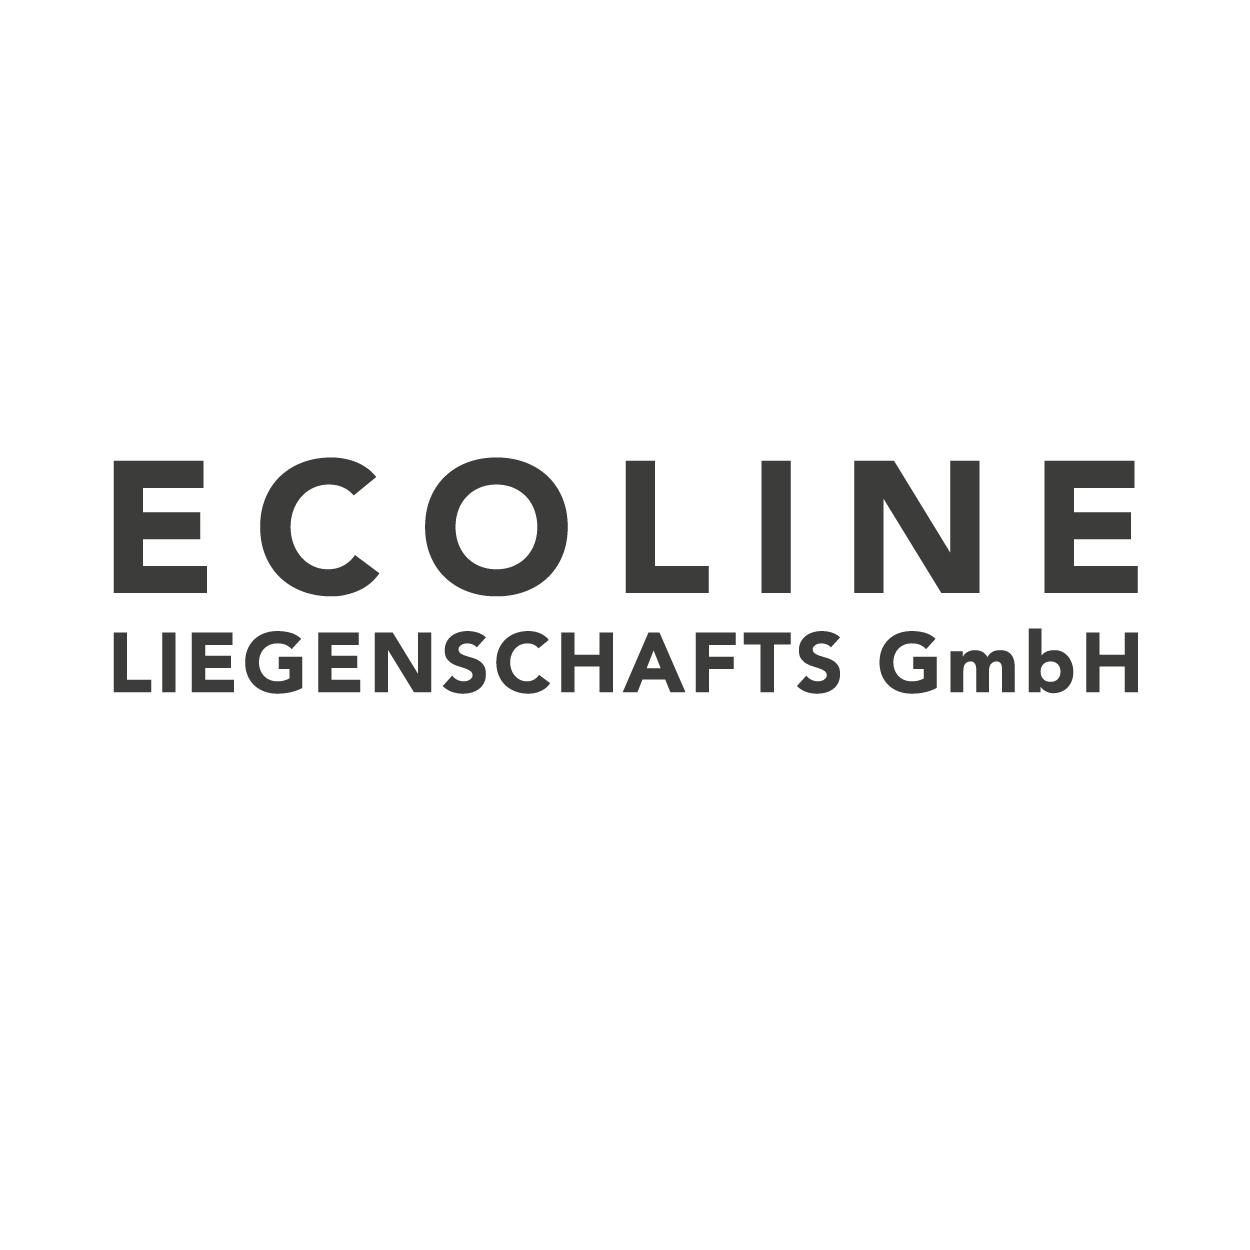 Ecoline Liegenschafts GmbH